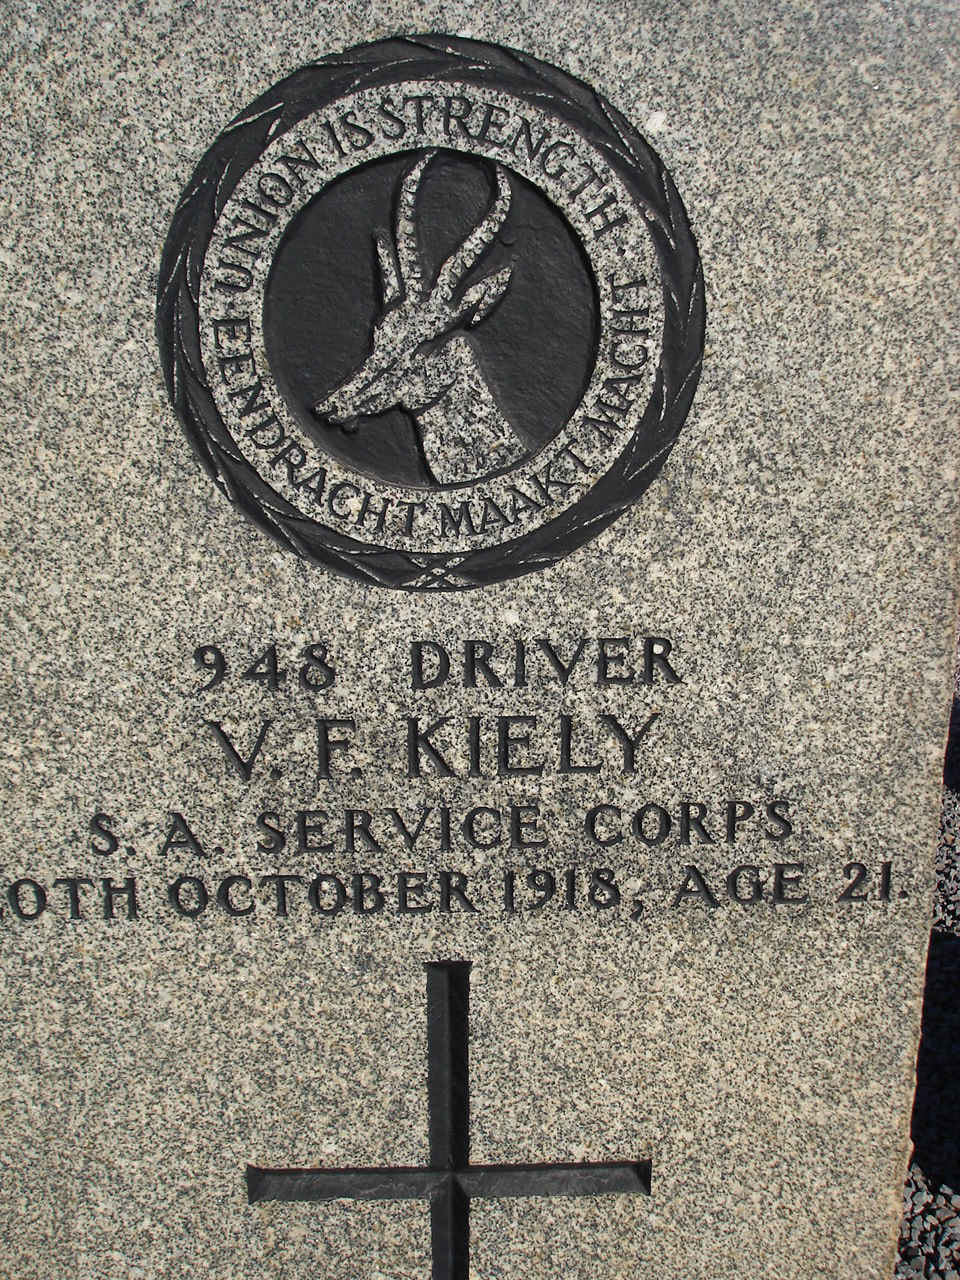 KIELY V.F. -1918